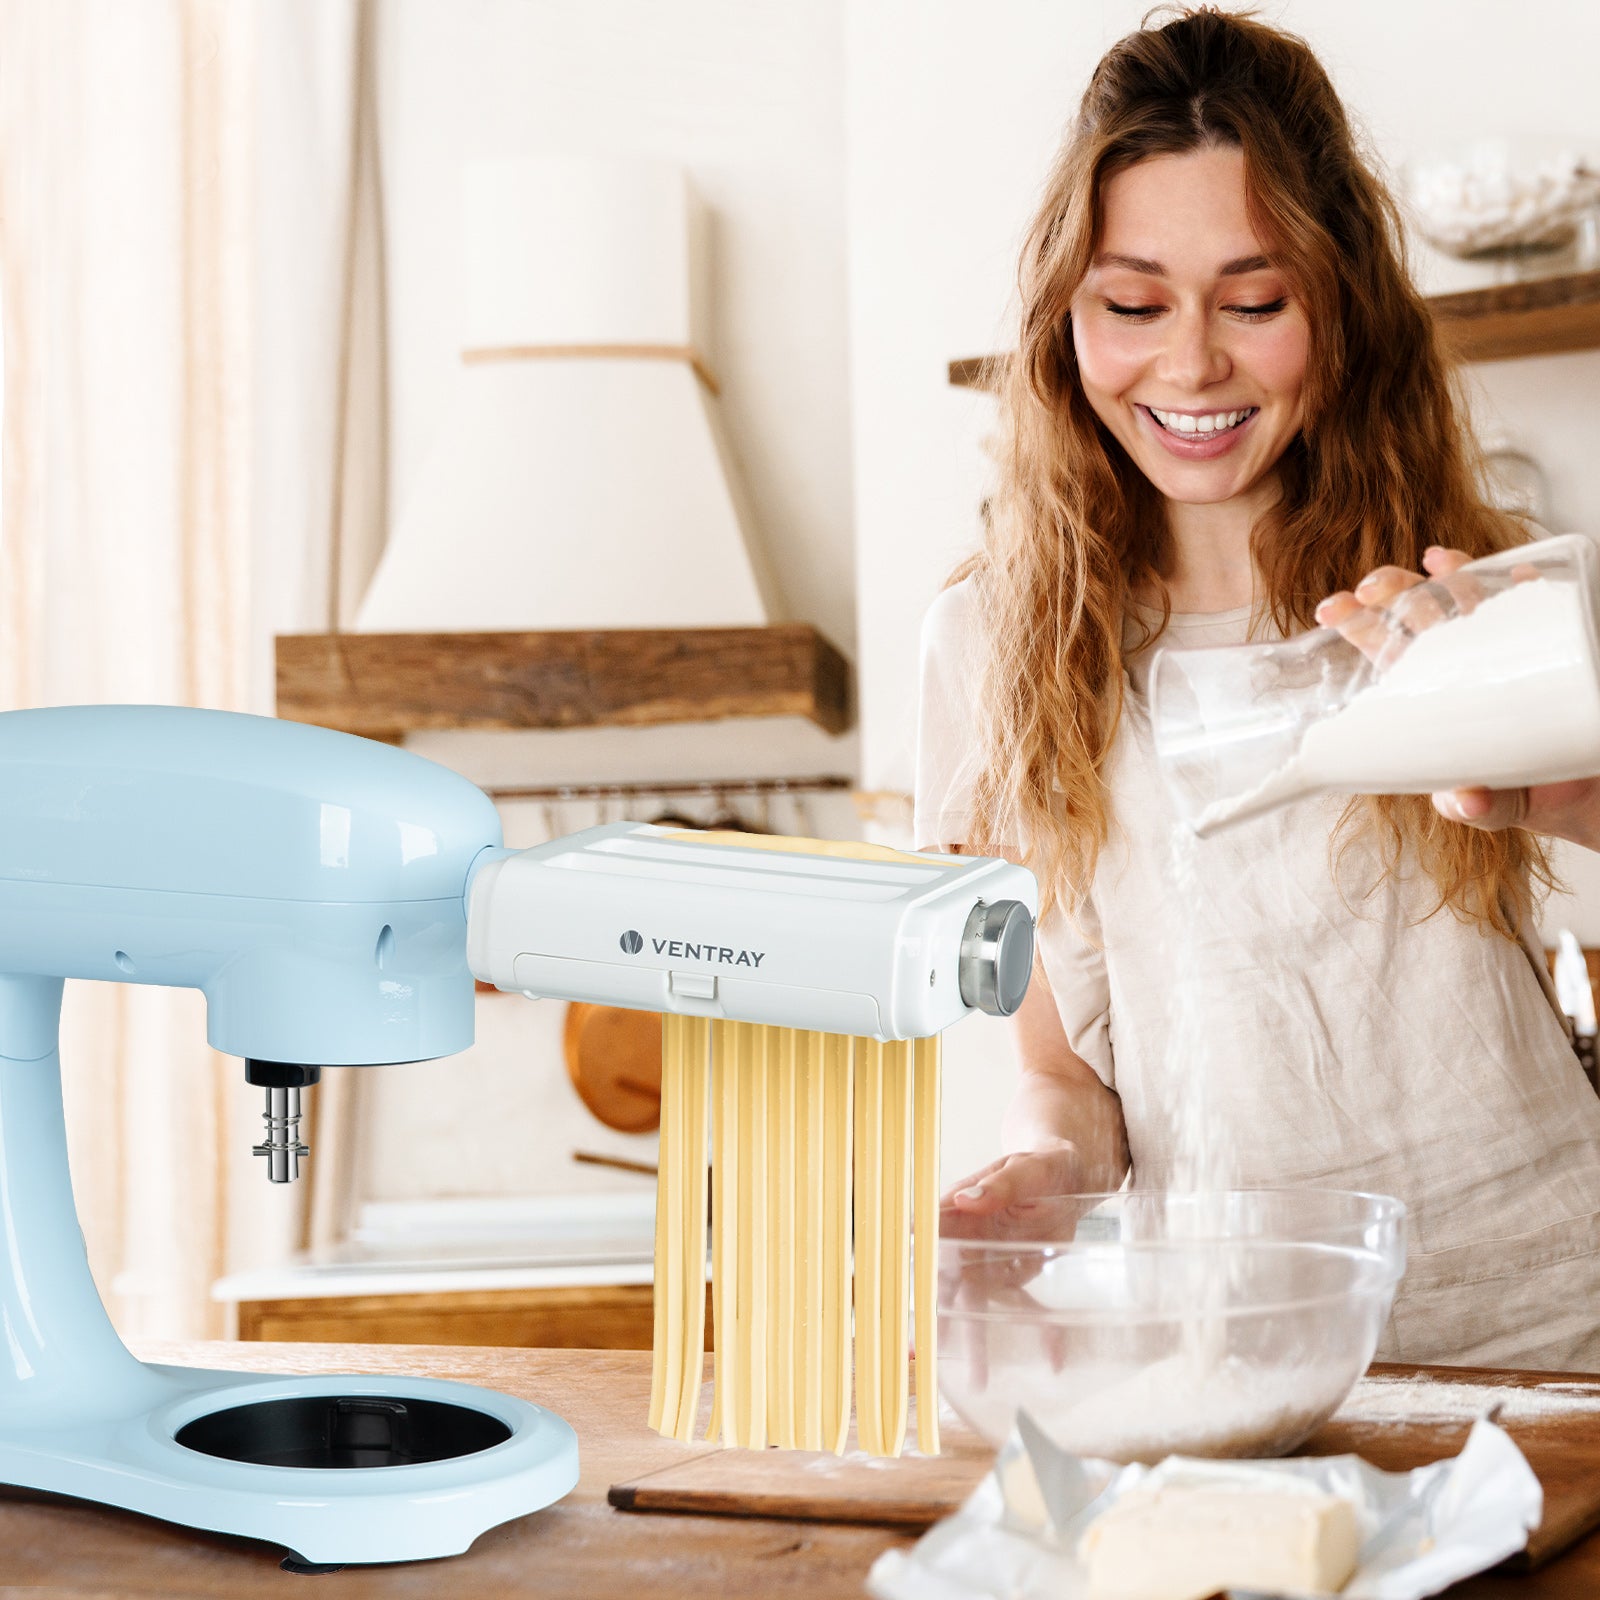 Pasta Maker Attachment for All Kitchenaid Stand Mixers,Noodle Ravioli Maker  3 in 1 Pasta Attachments Includes Dough Roller,Spaghetti Fettuccine